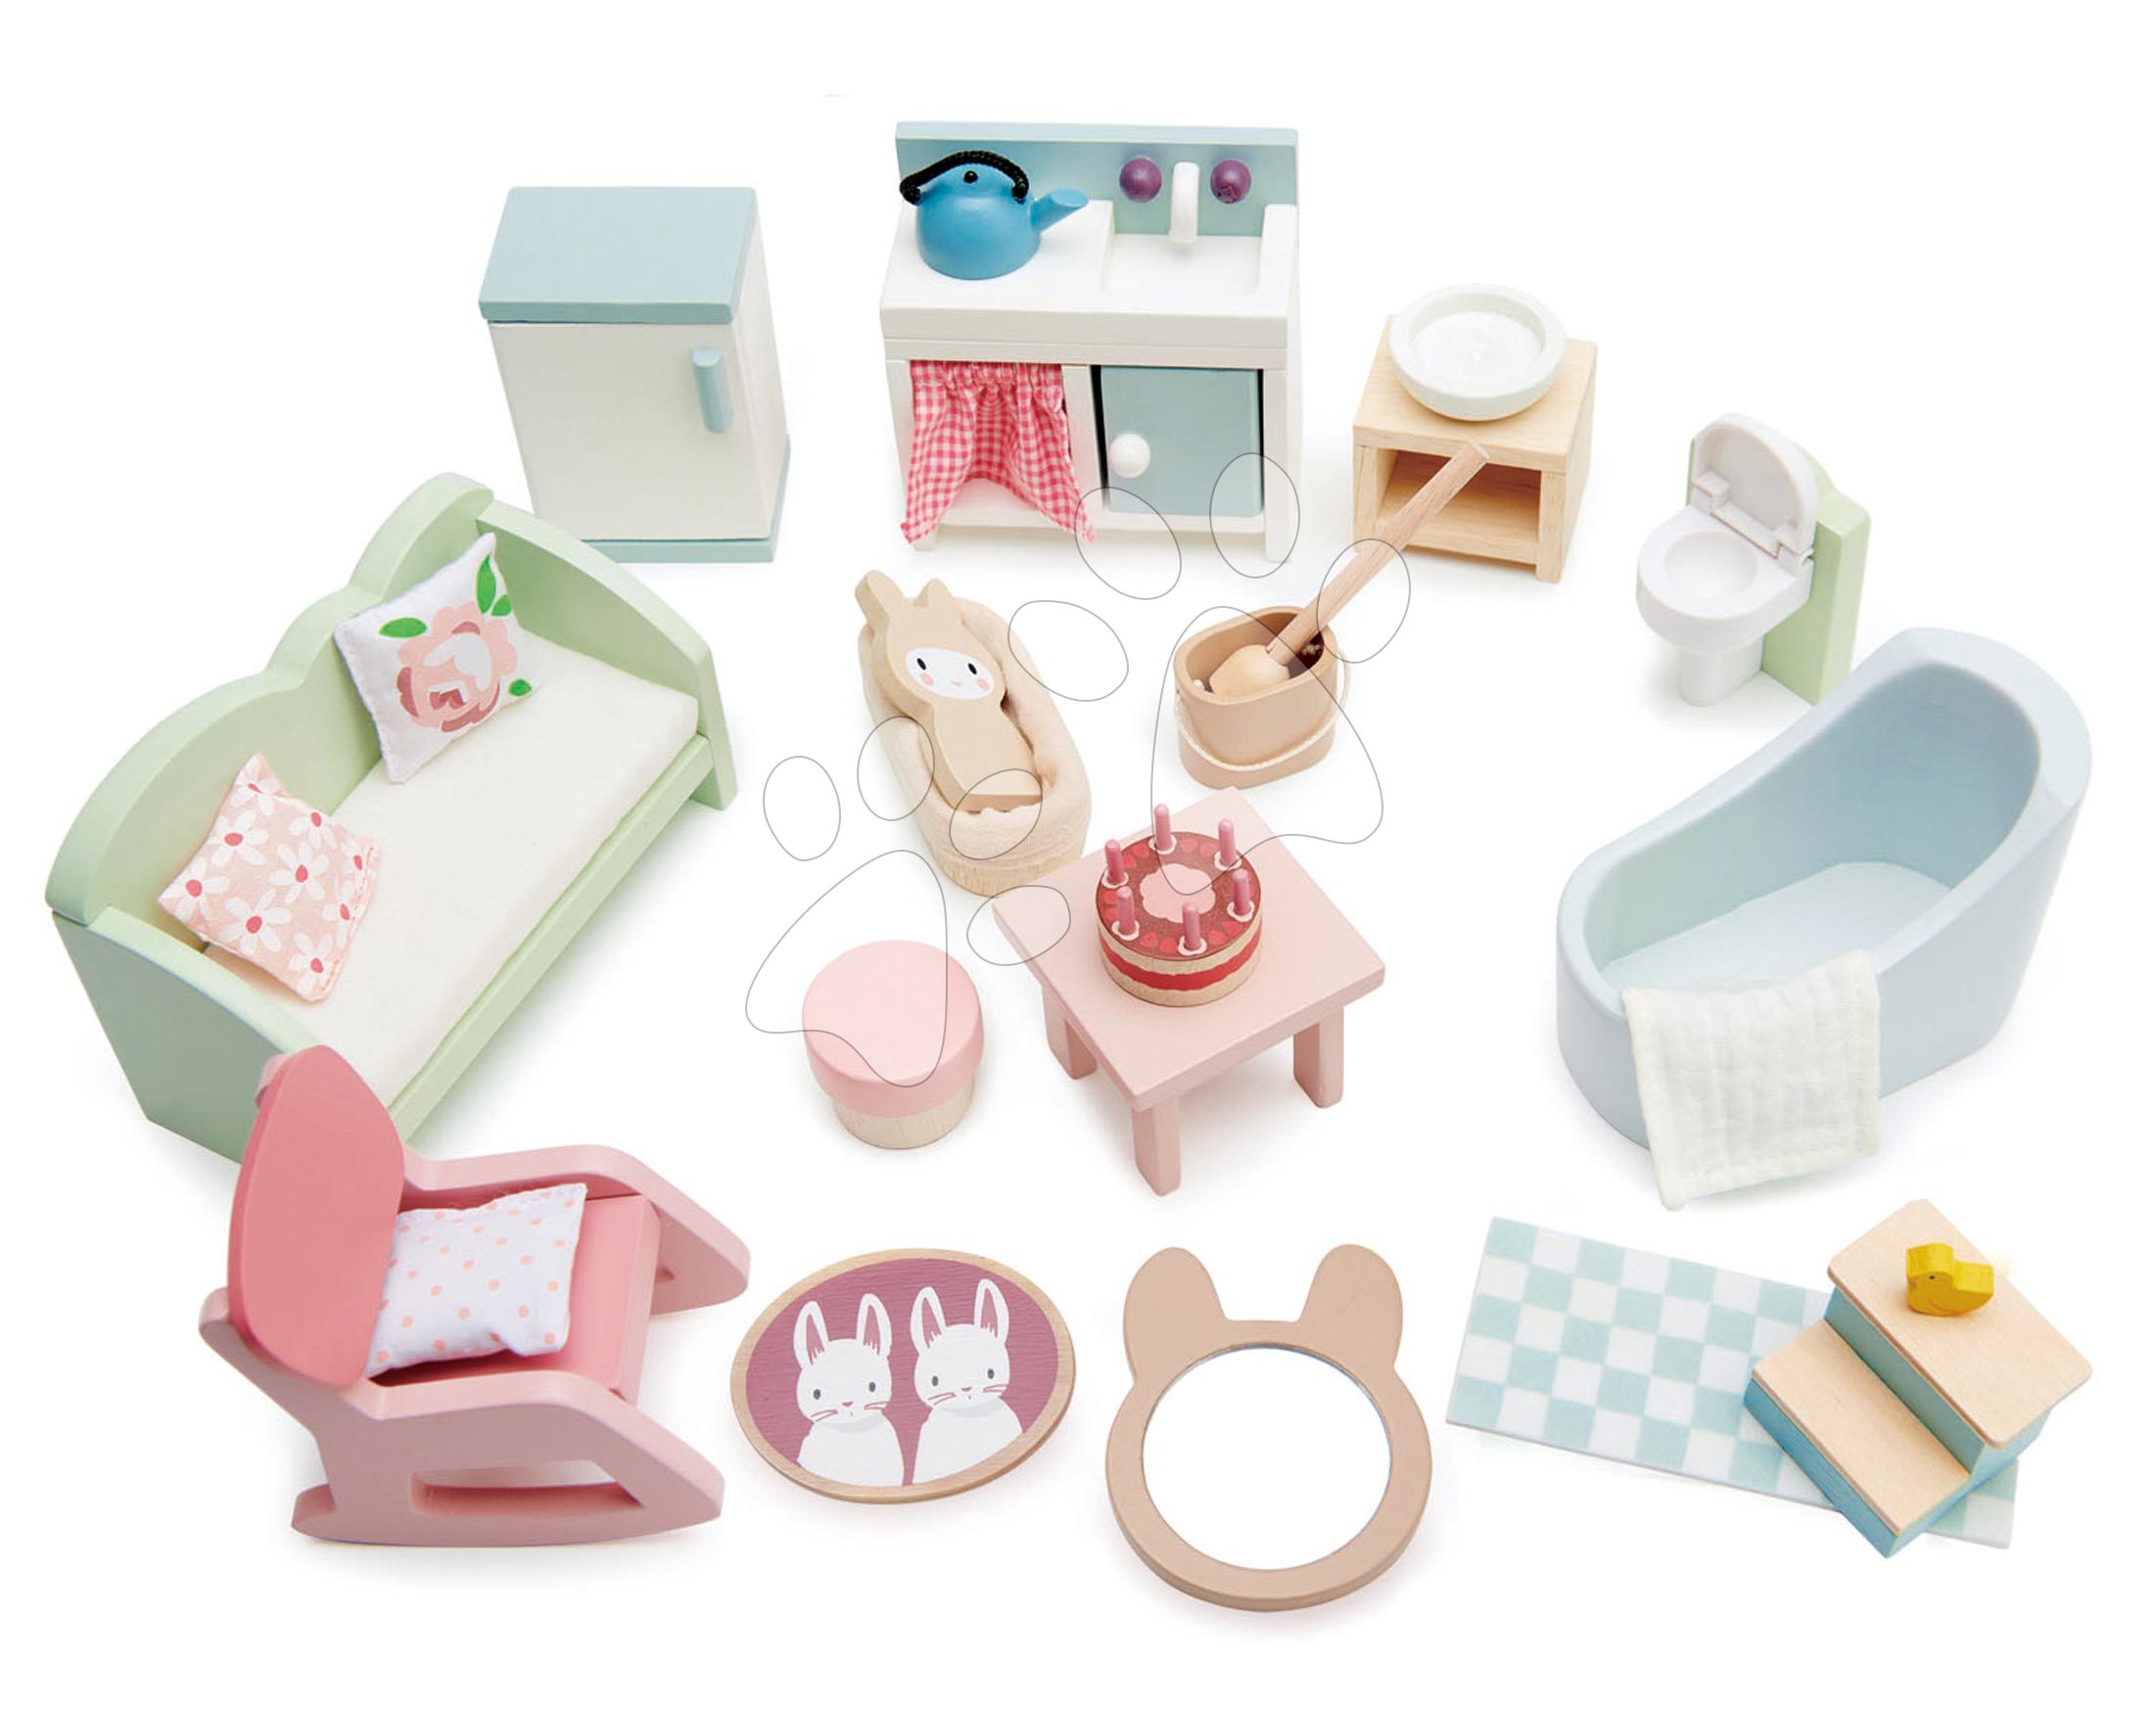 Drevený nábytok pre bábiku Countryside Furniture Set Tender Leaf Toys do vidieckeho domčeka pre bábiku